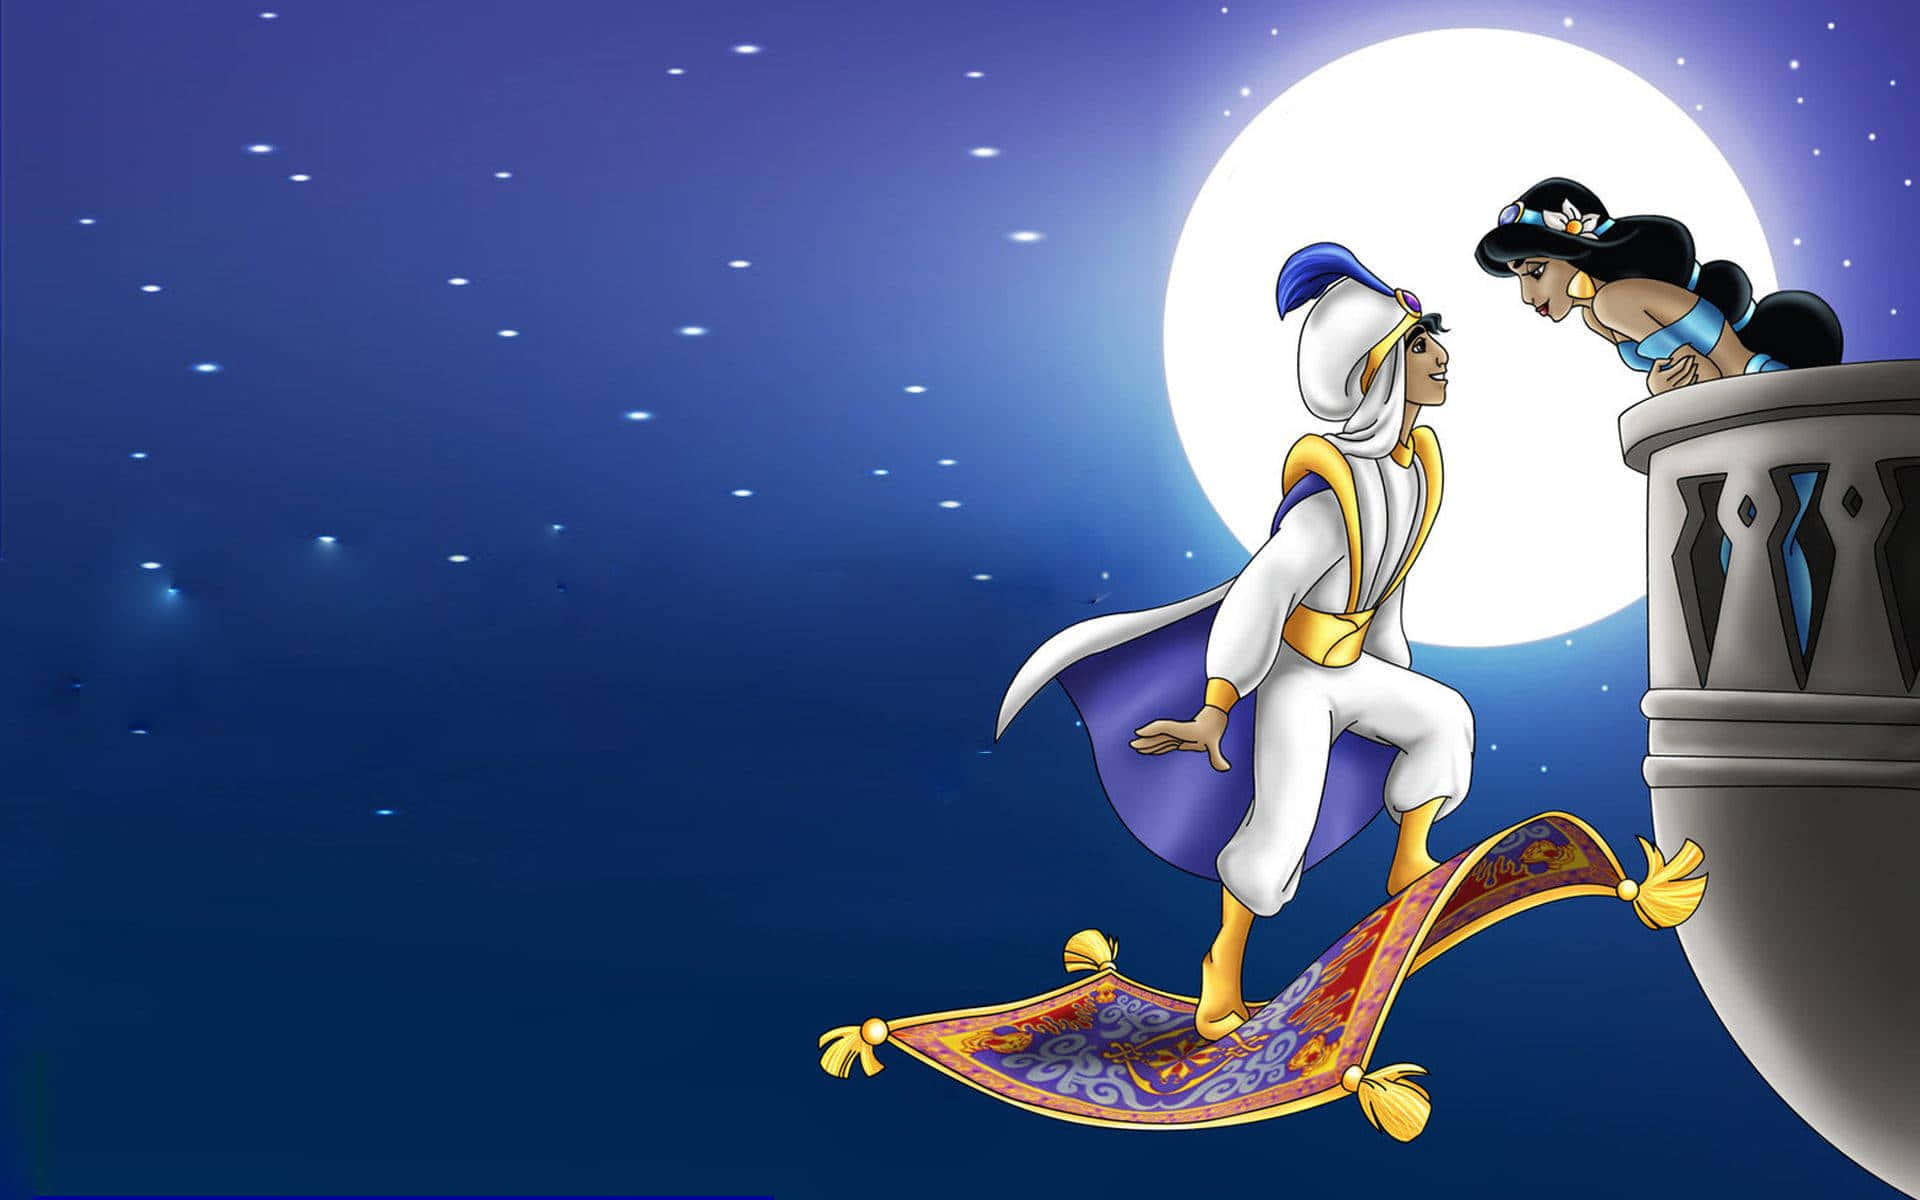 "The Legendary Genie of Aladdin"